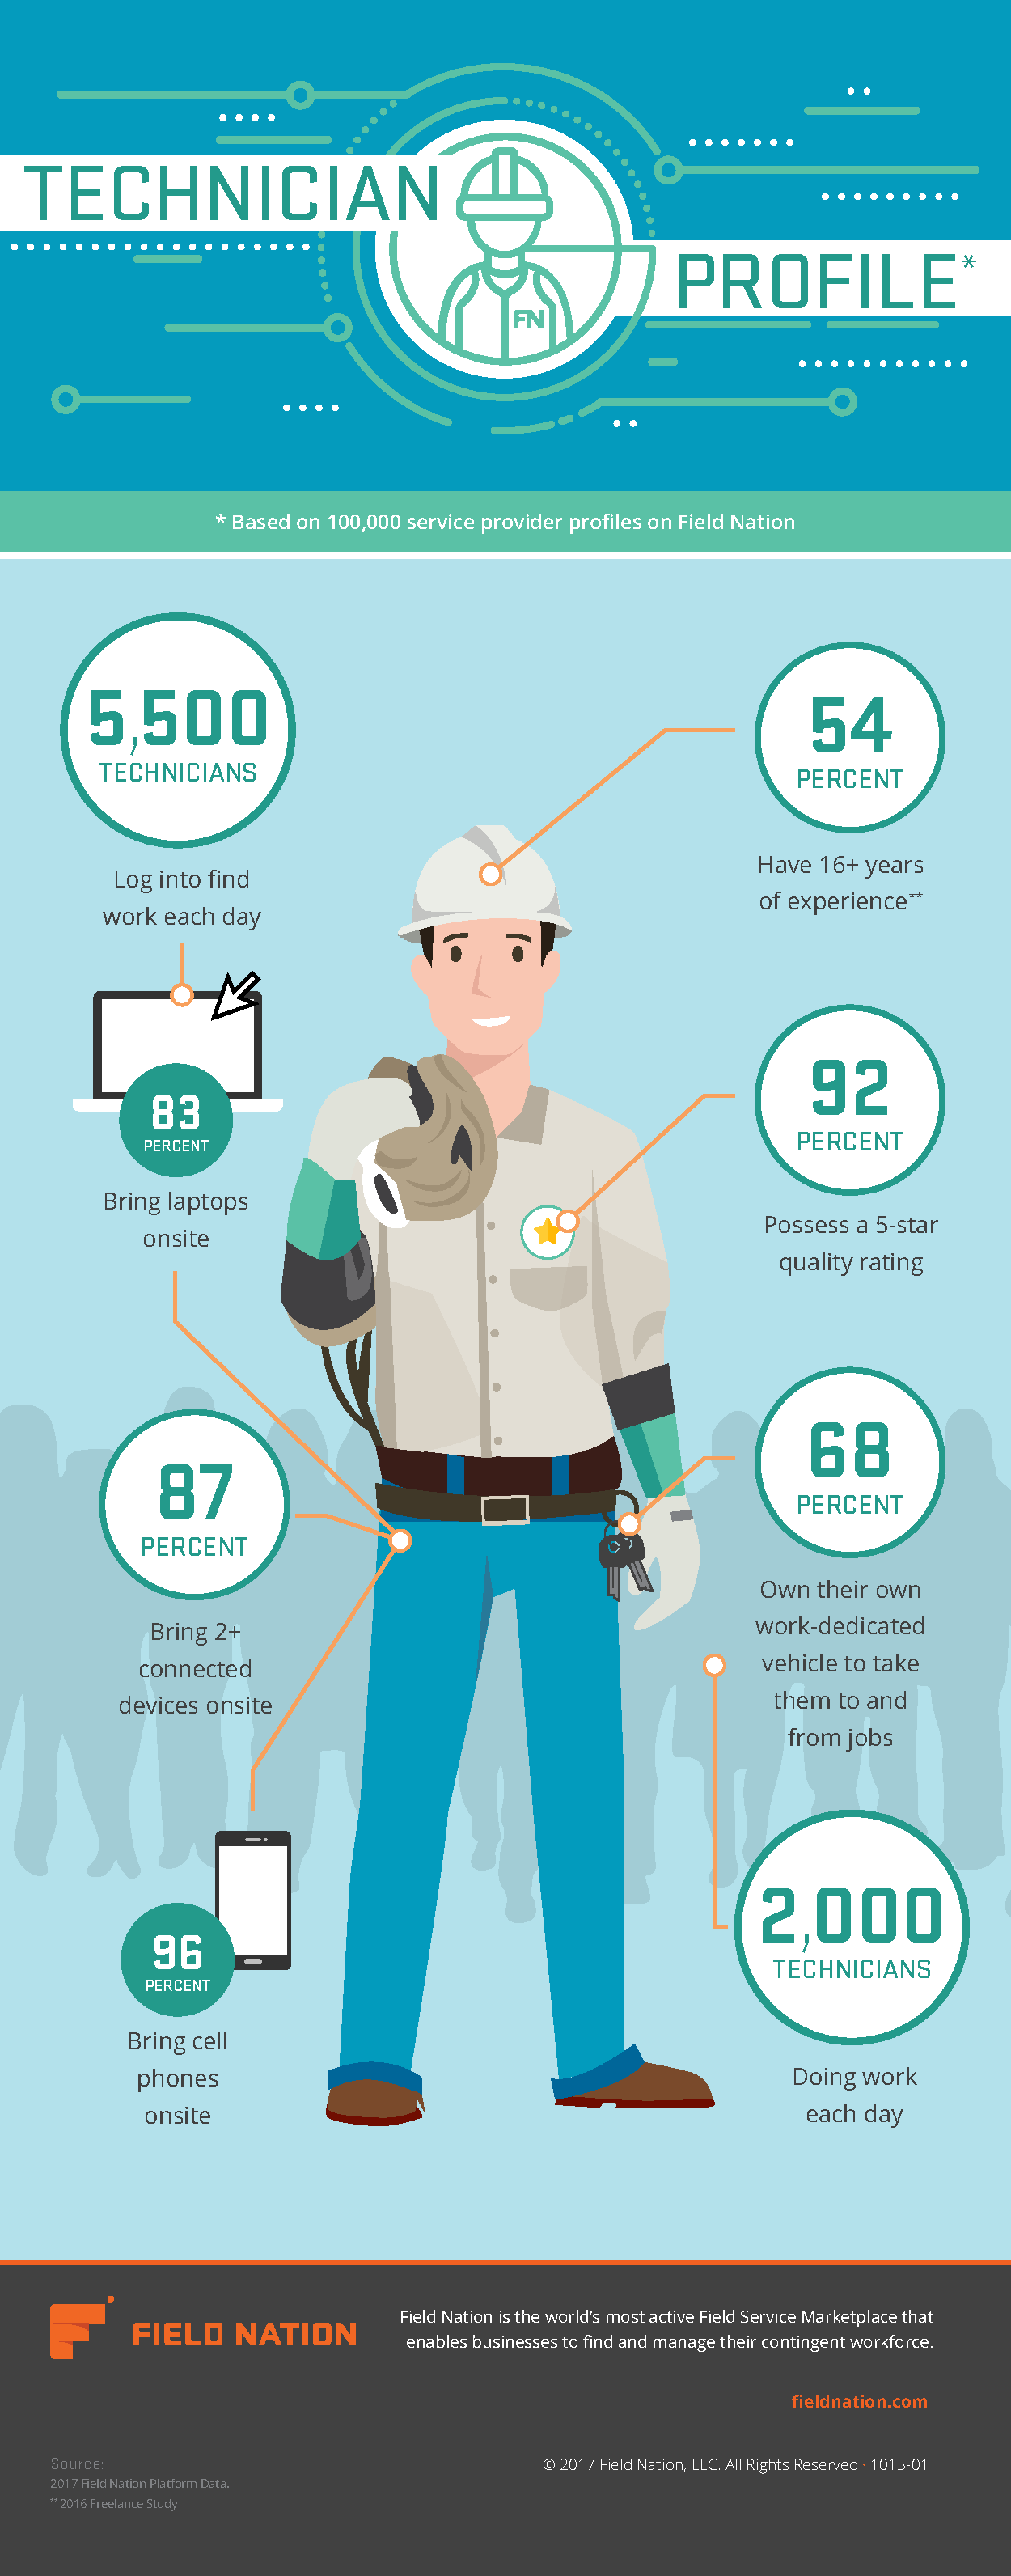 Technician-profile-infographic_r01v01